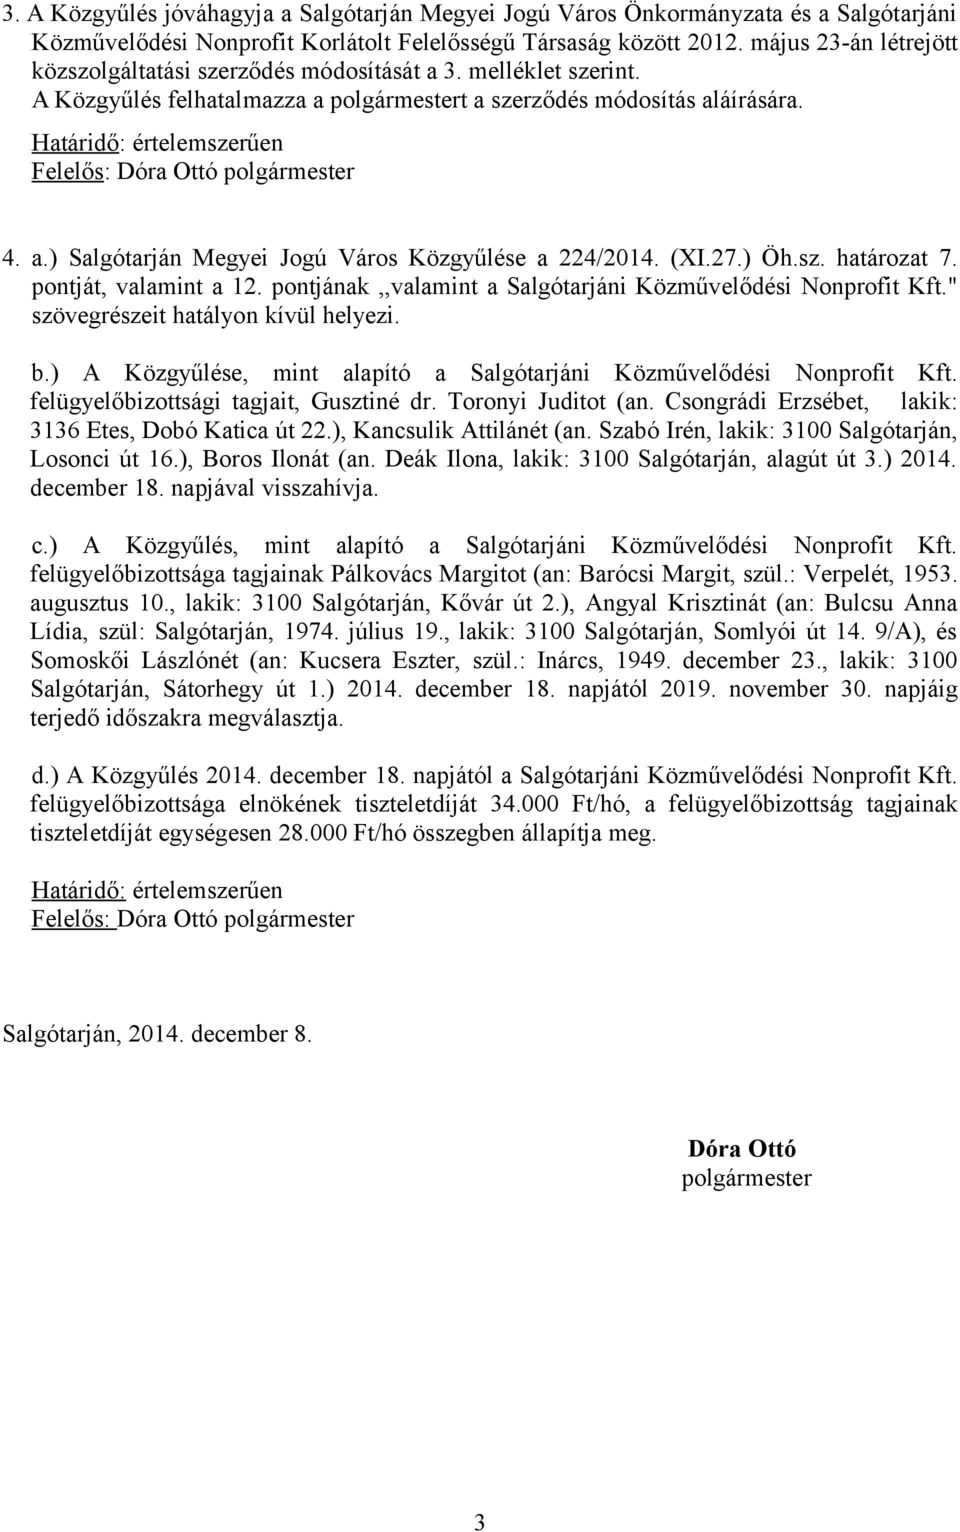 Határidő: értelemszerűen Felelős: Dóra Ottó polgármester 4. a.) Salgótarján Megyei Jogú Város Közgyűlése a 224/2014. (XI.27.) Öh.sz. határozat 7. pontját, valamint a 12.